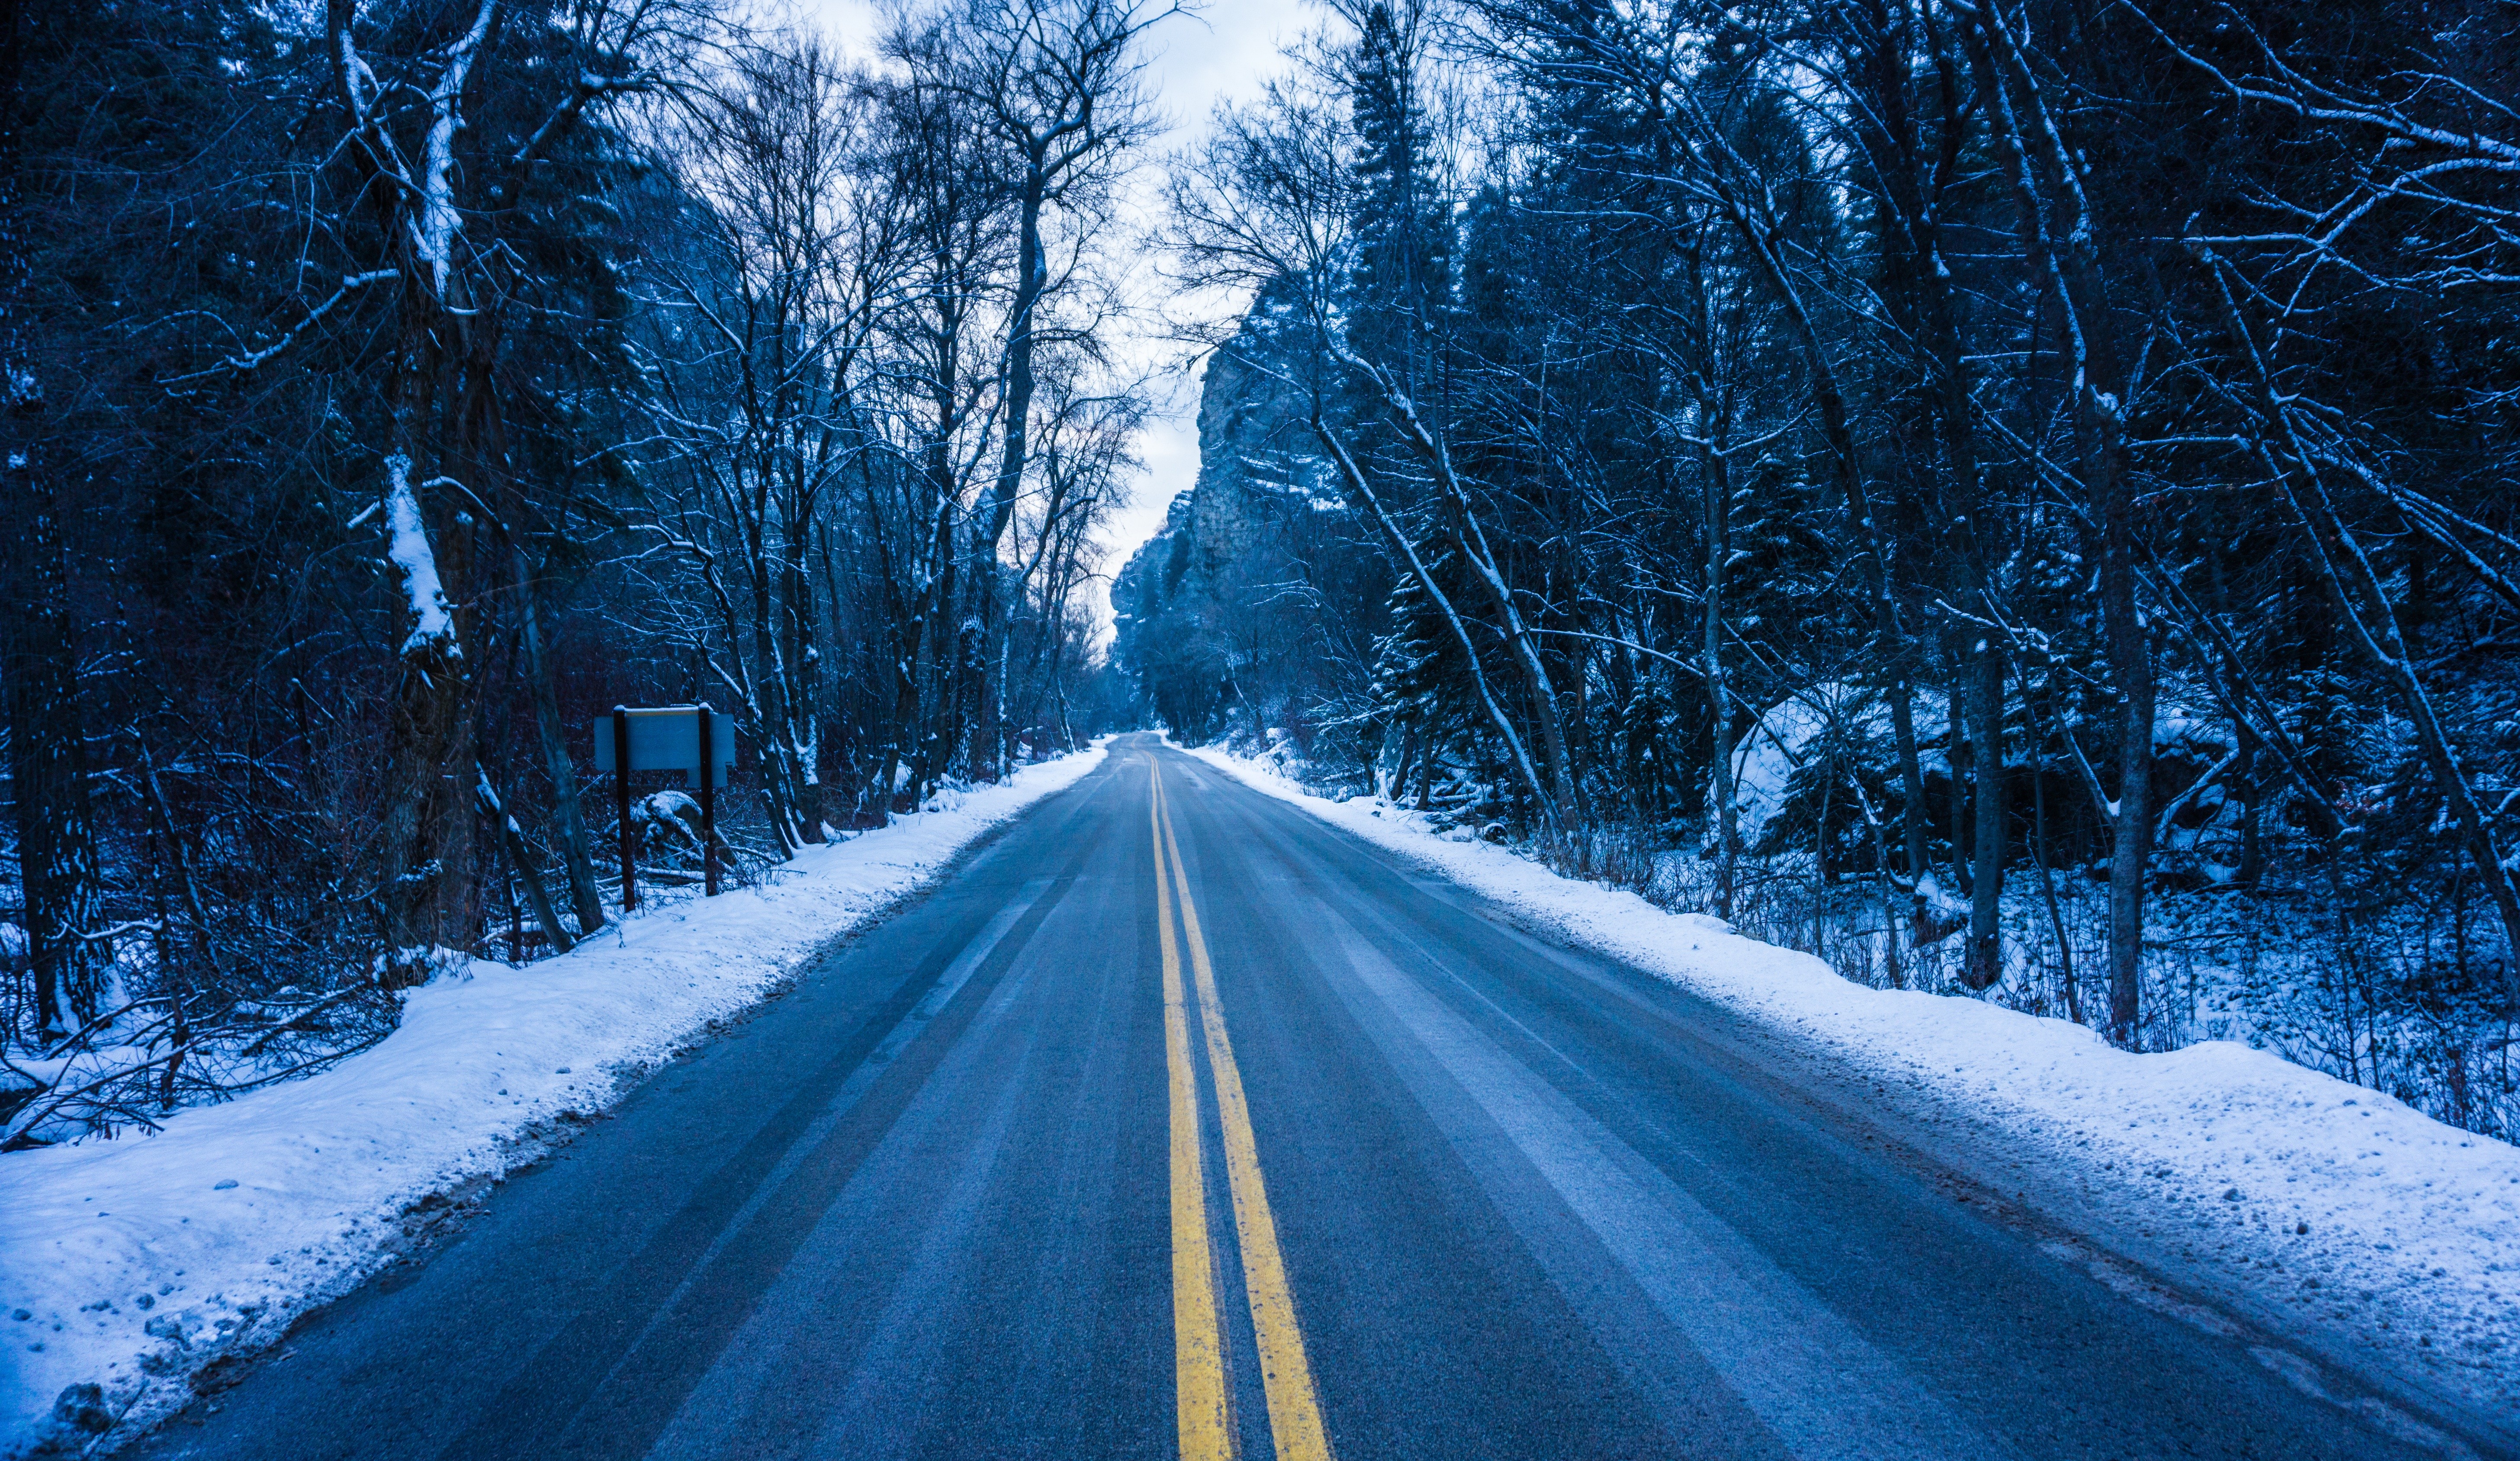 Тема зимней дороги. Зимняя дорога в лесу. Заснеженная дорога. Зимняя трасса. Заснеженная дорога в лесу.